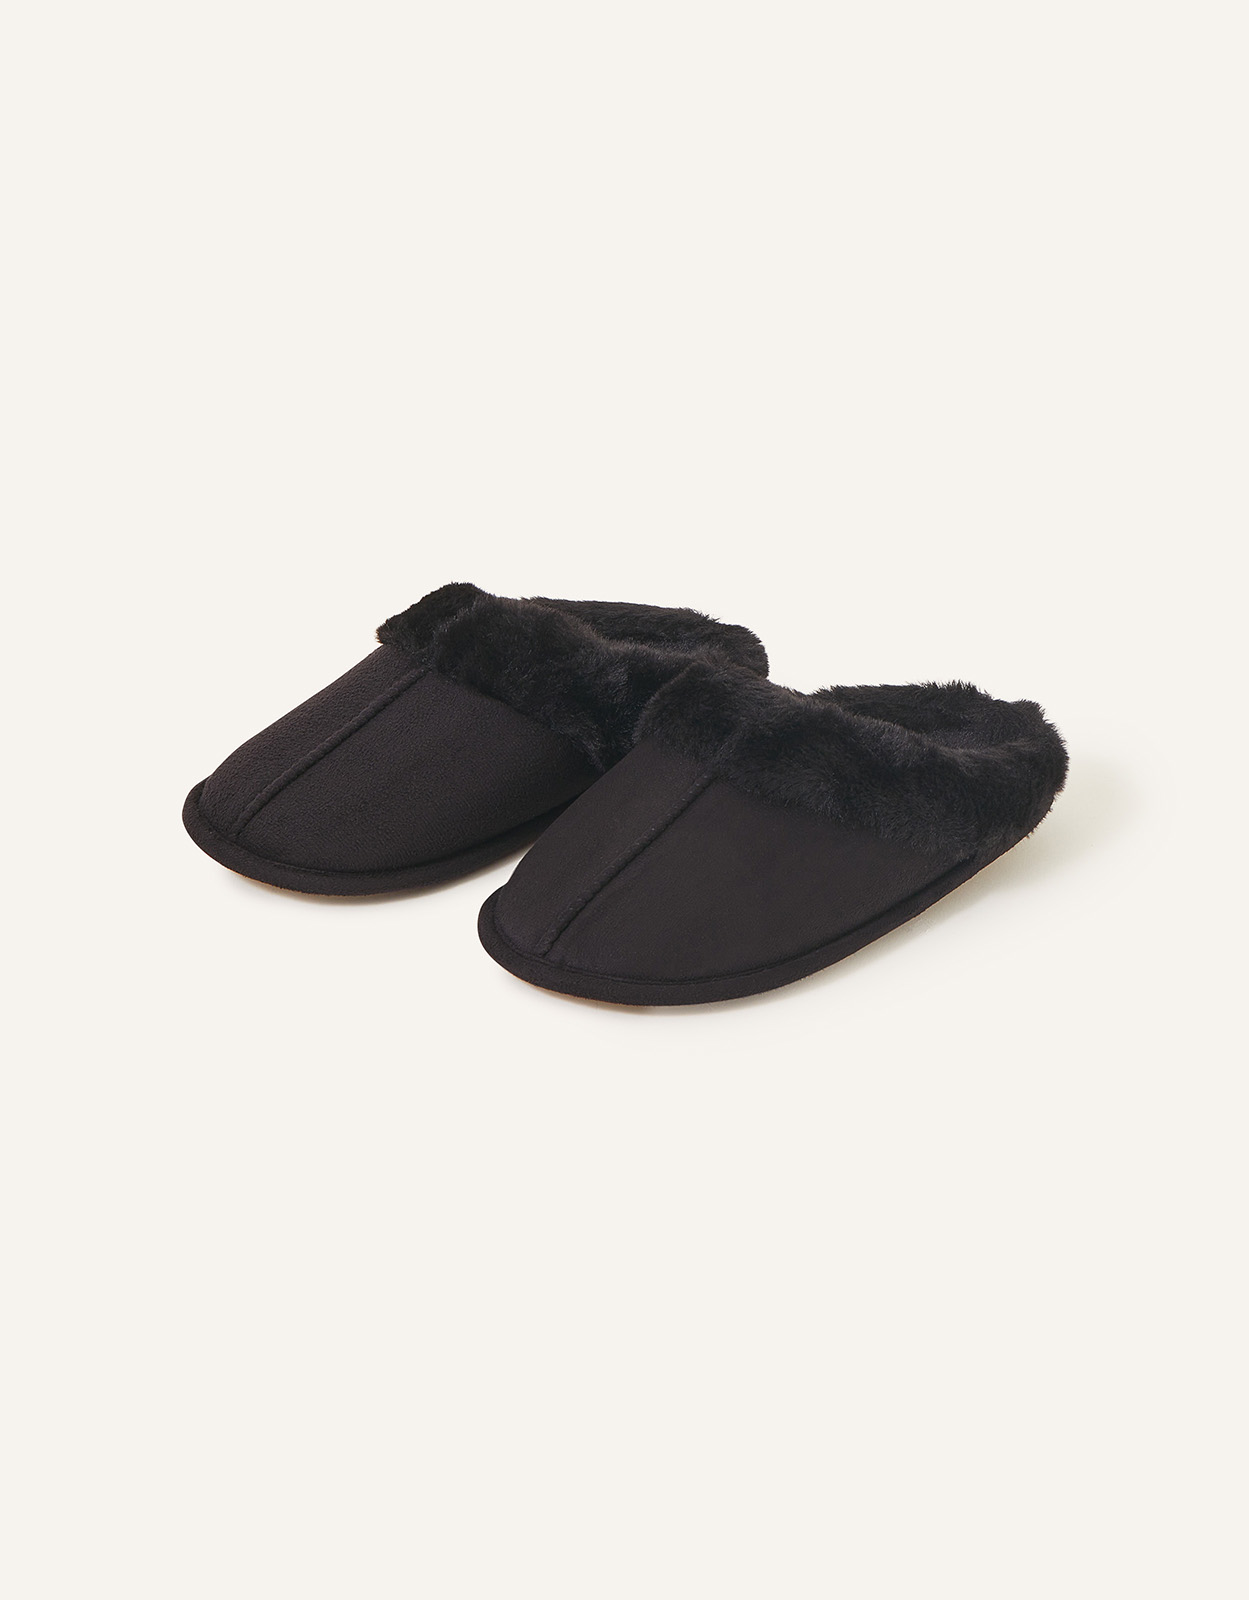 Accessorize Women's Faux Fur Mule Slippers Black, Size: S